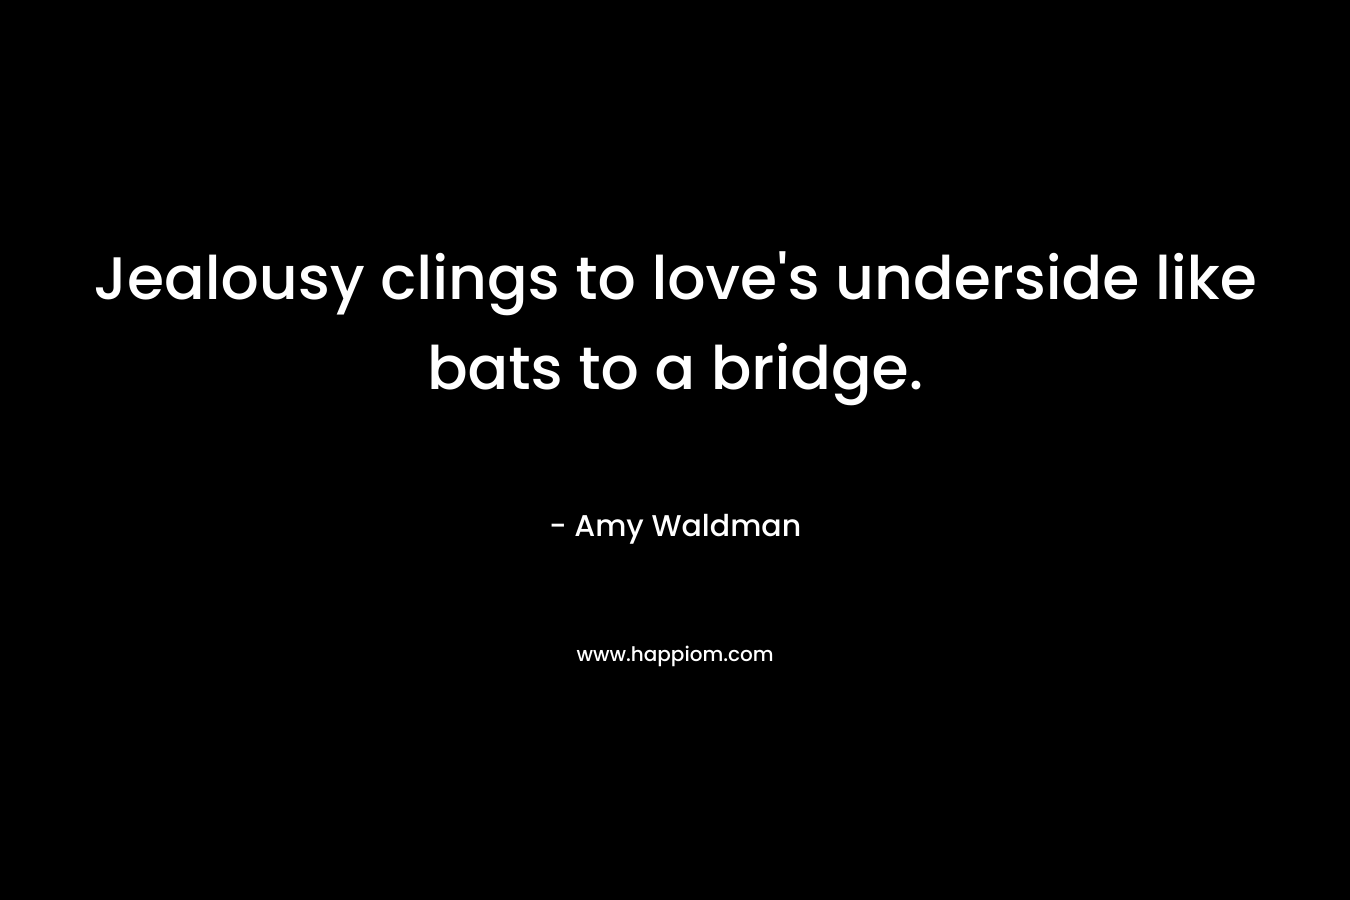 Jealousy clings to love's underside like bats to a bridge.